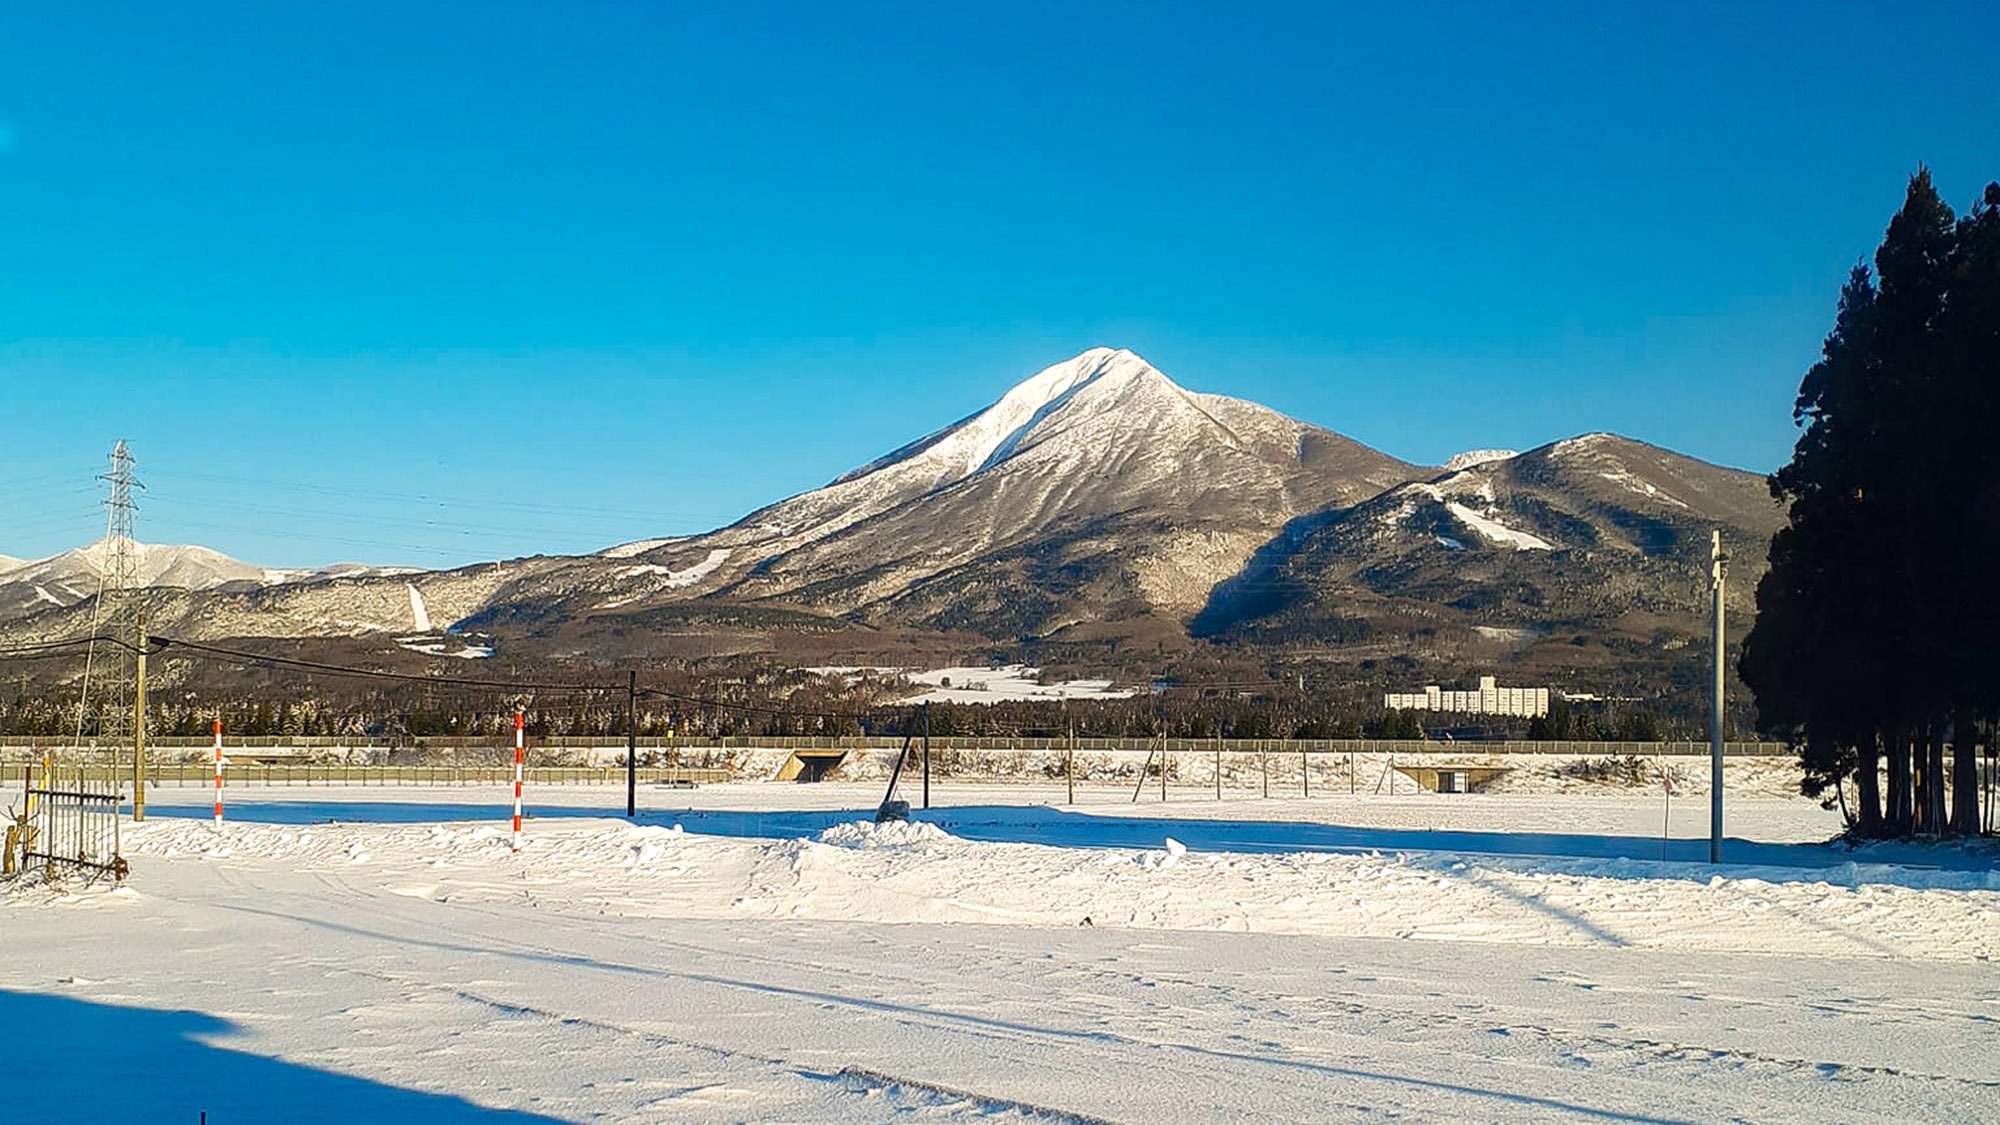 ・冬になると雪にすっぽり覆われた磐梯山をご覧いただけます